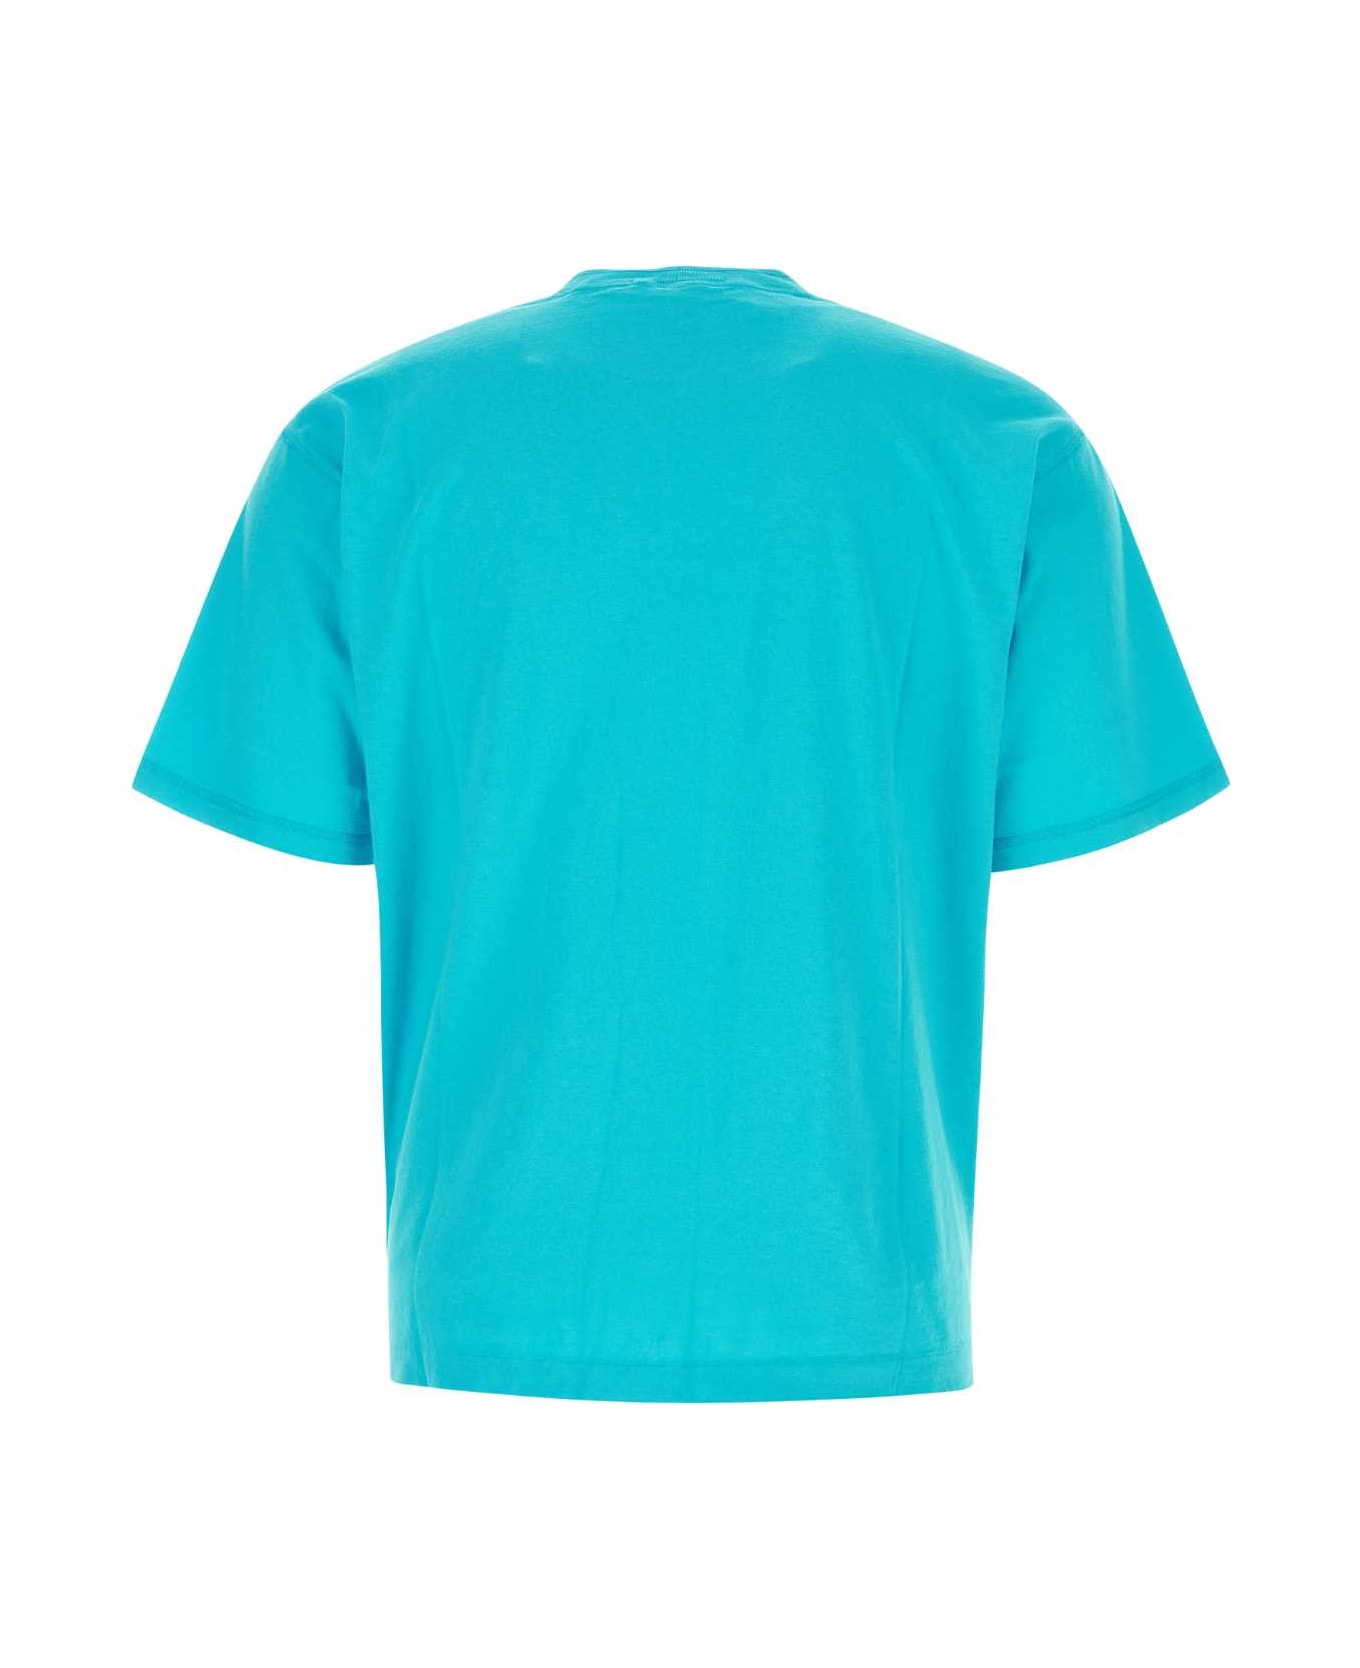 Stone Island Turquoise Cotton T-shirt - V0042